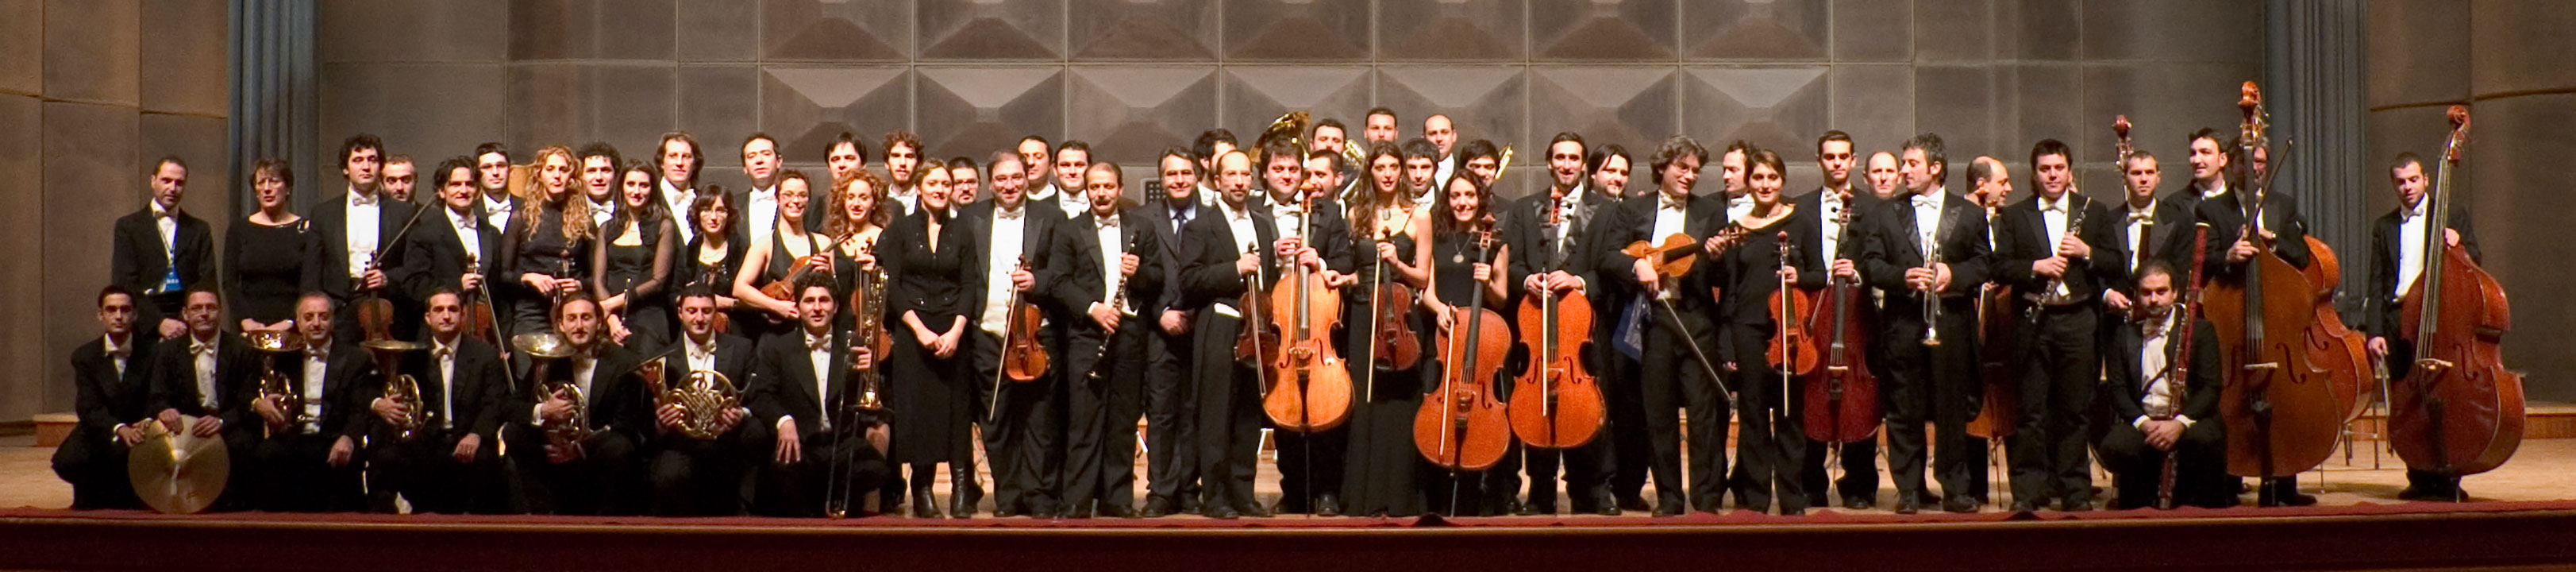 Nuova Orchestra Scarlatti 